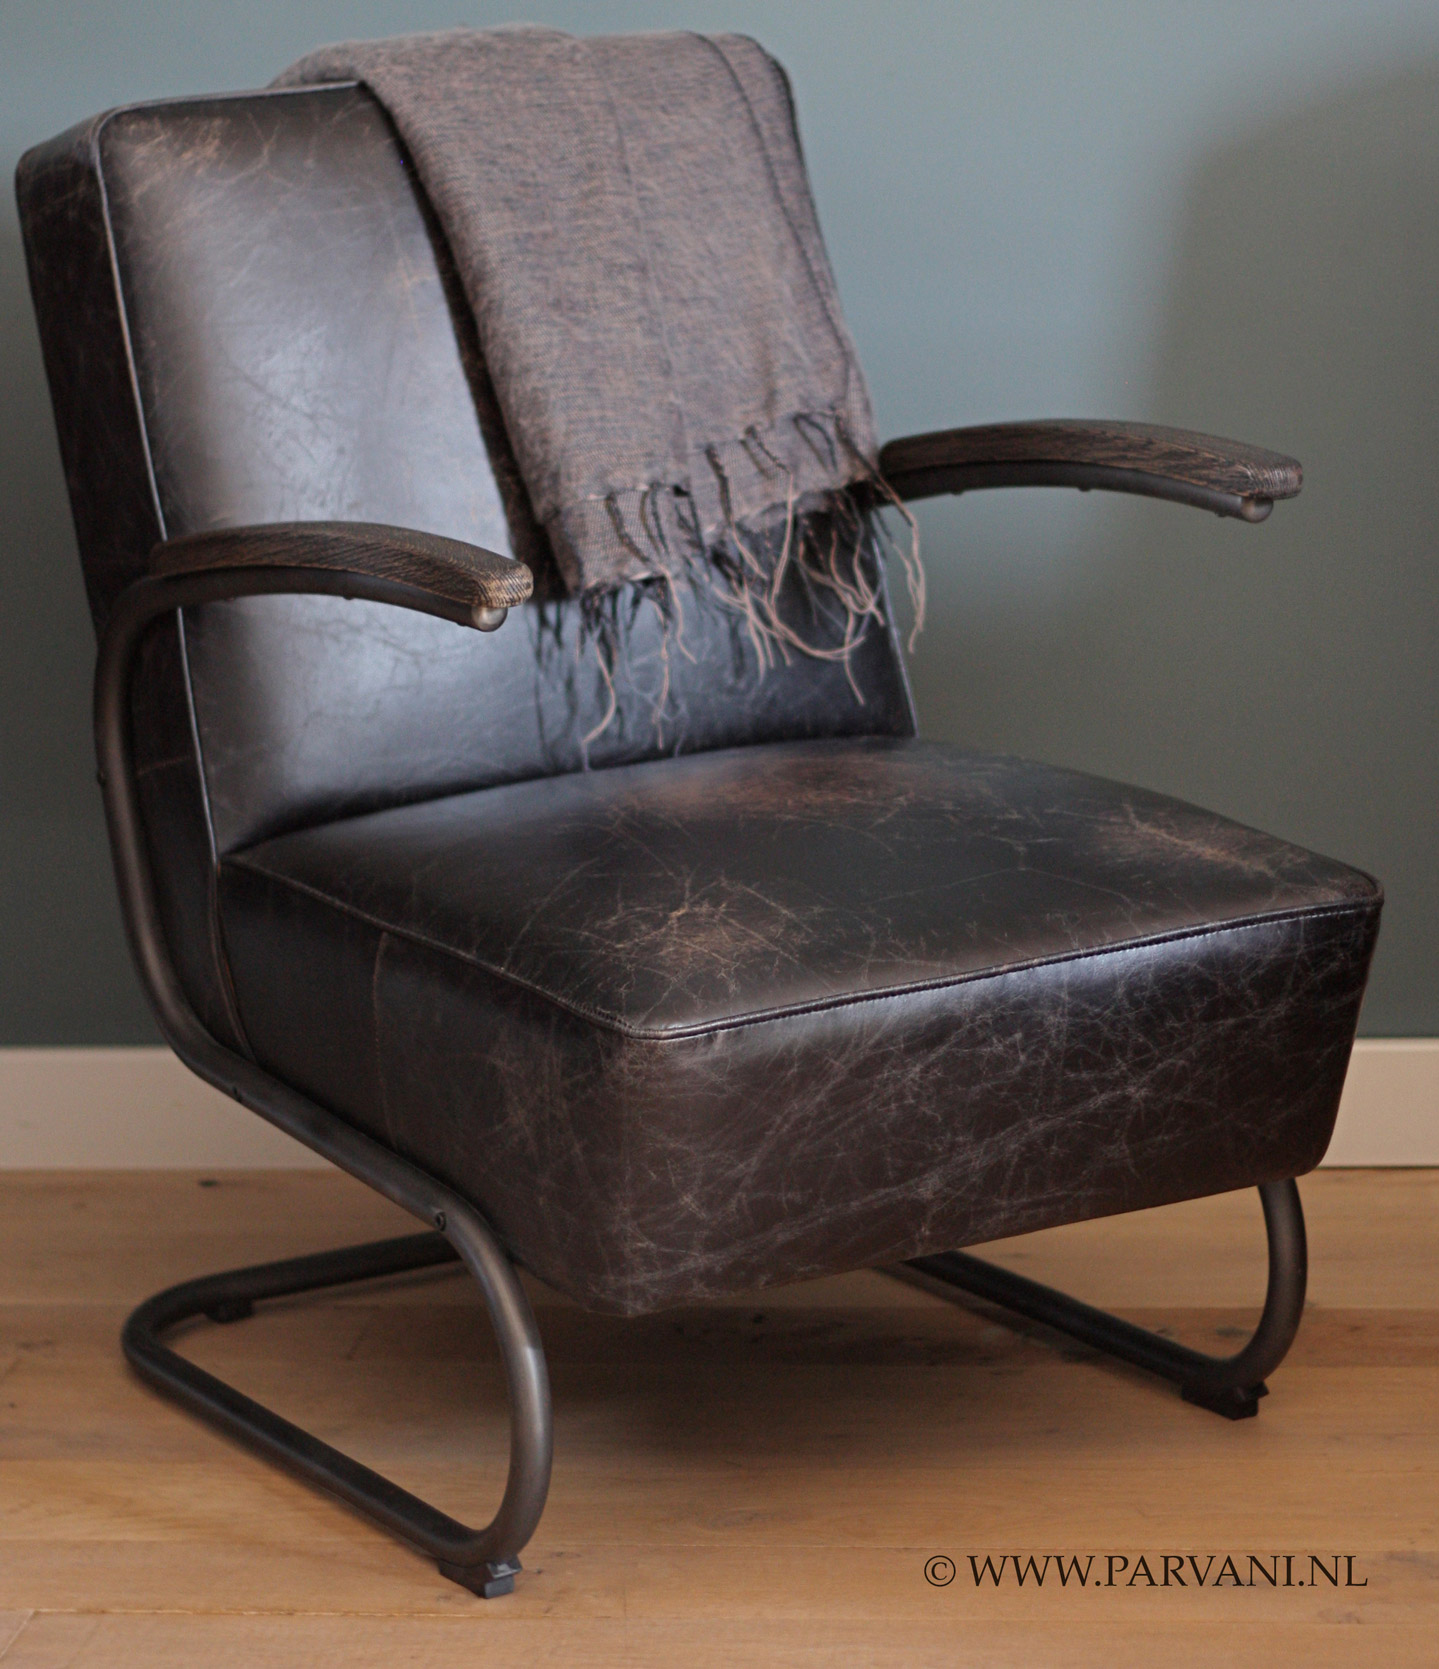 Vintage-leren-fauteuil-stoel-robuust |